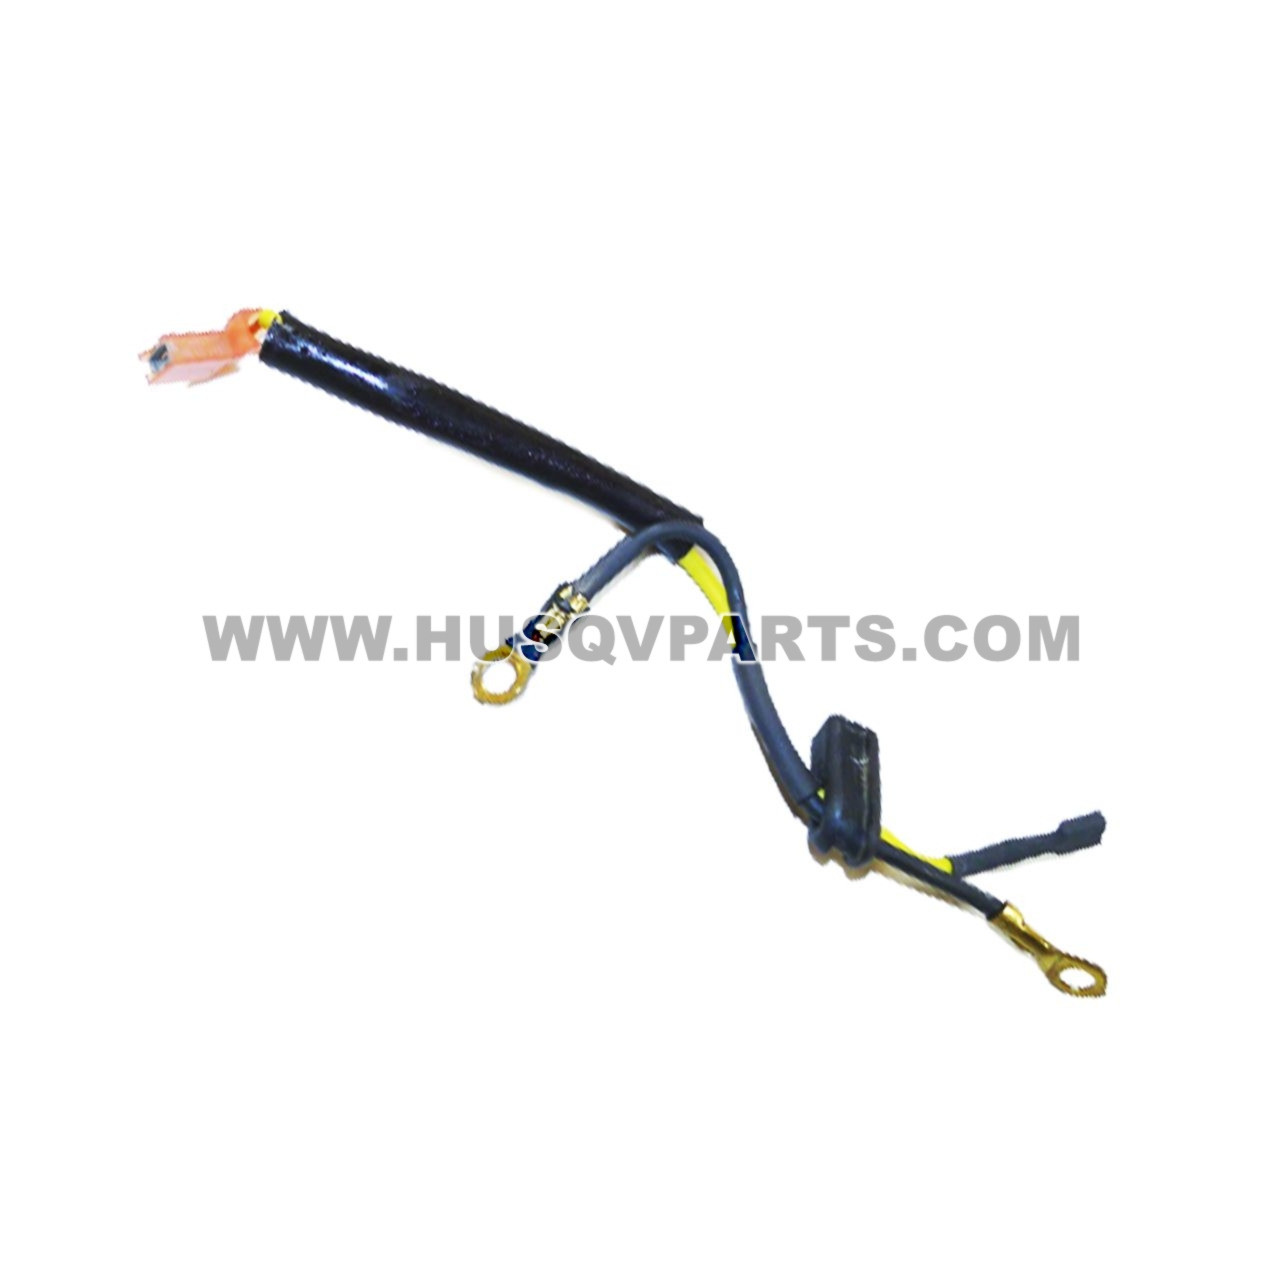 Husqvarna 530403257 - Lead Wire Assy - NO LONGER AVAILABLE | Husqvarna Parts